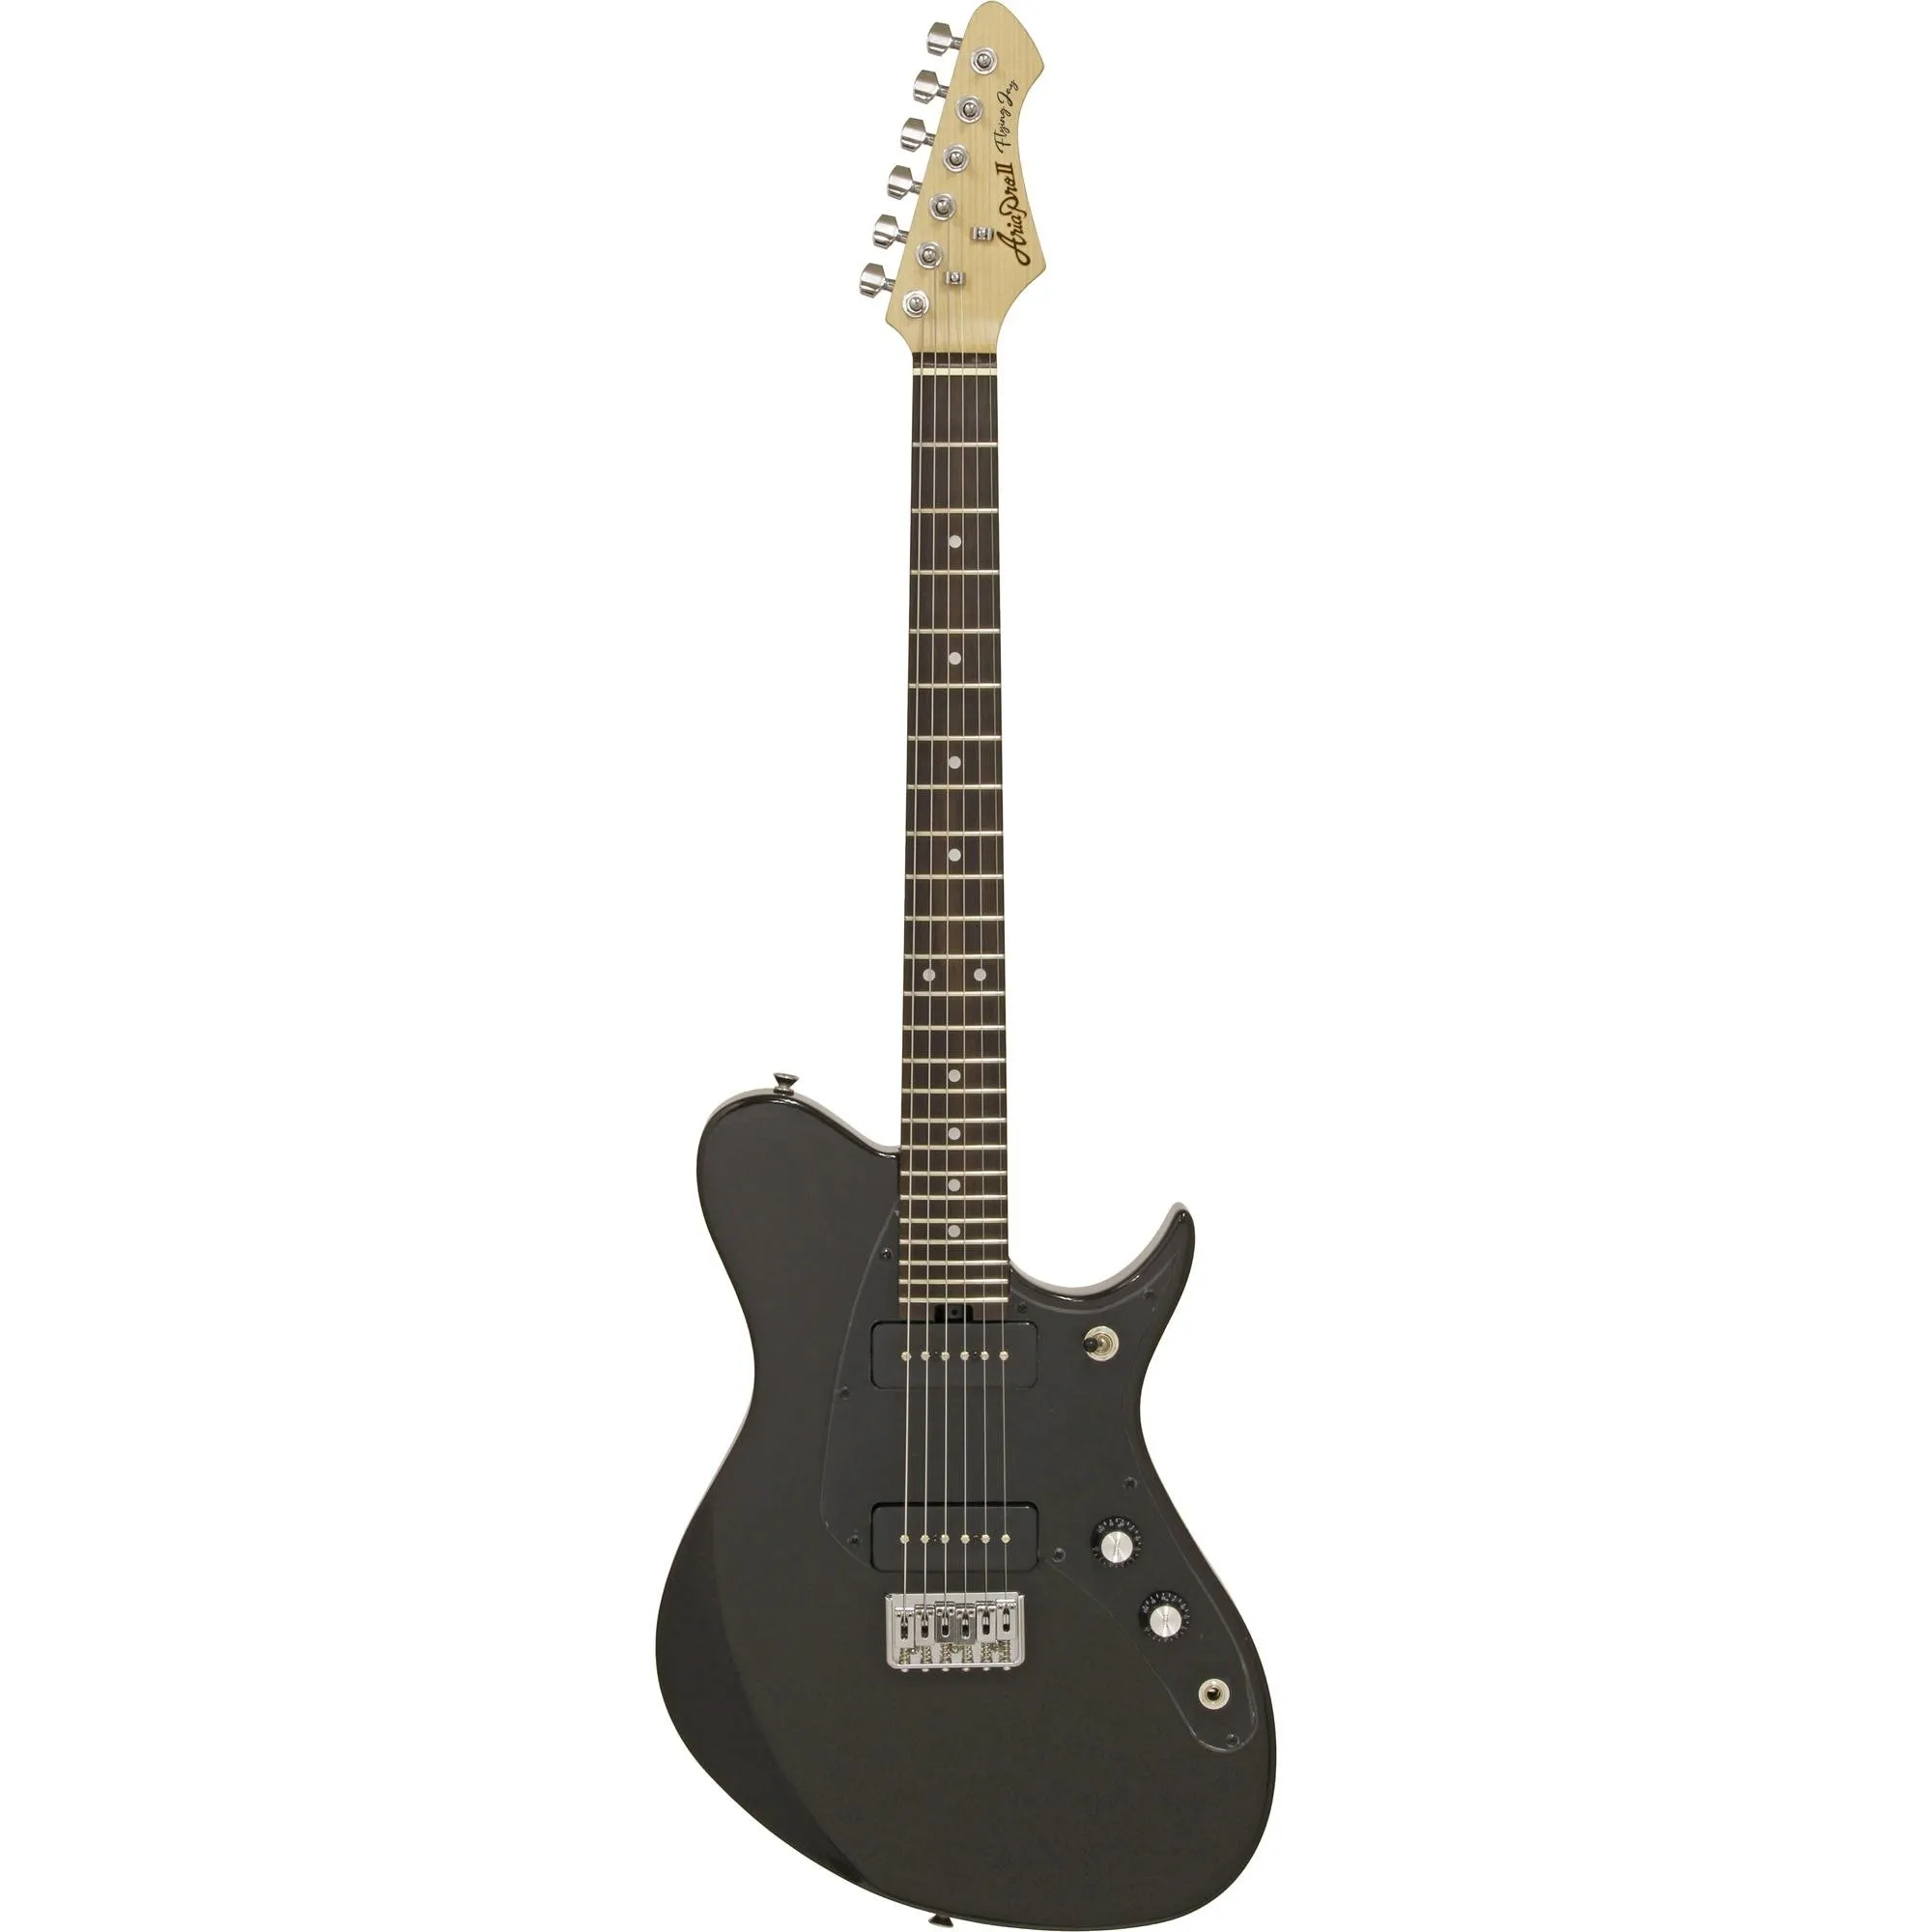 Guitarra Aria Pro II J-2 Black por 0,00 à vista no boleto/pix ou parcele em até 1x sem juros. Compre na loja Mundomax!